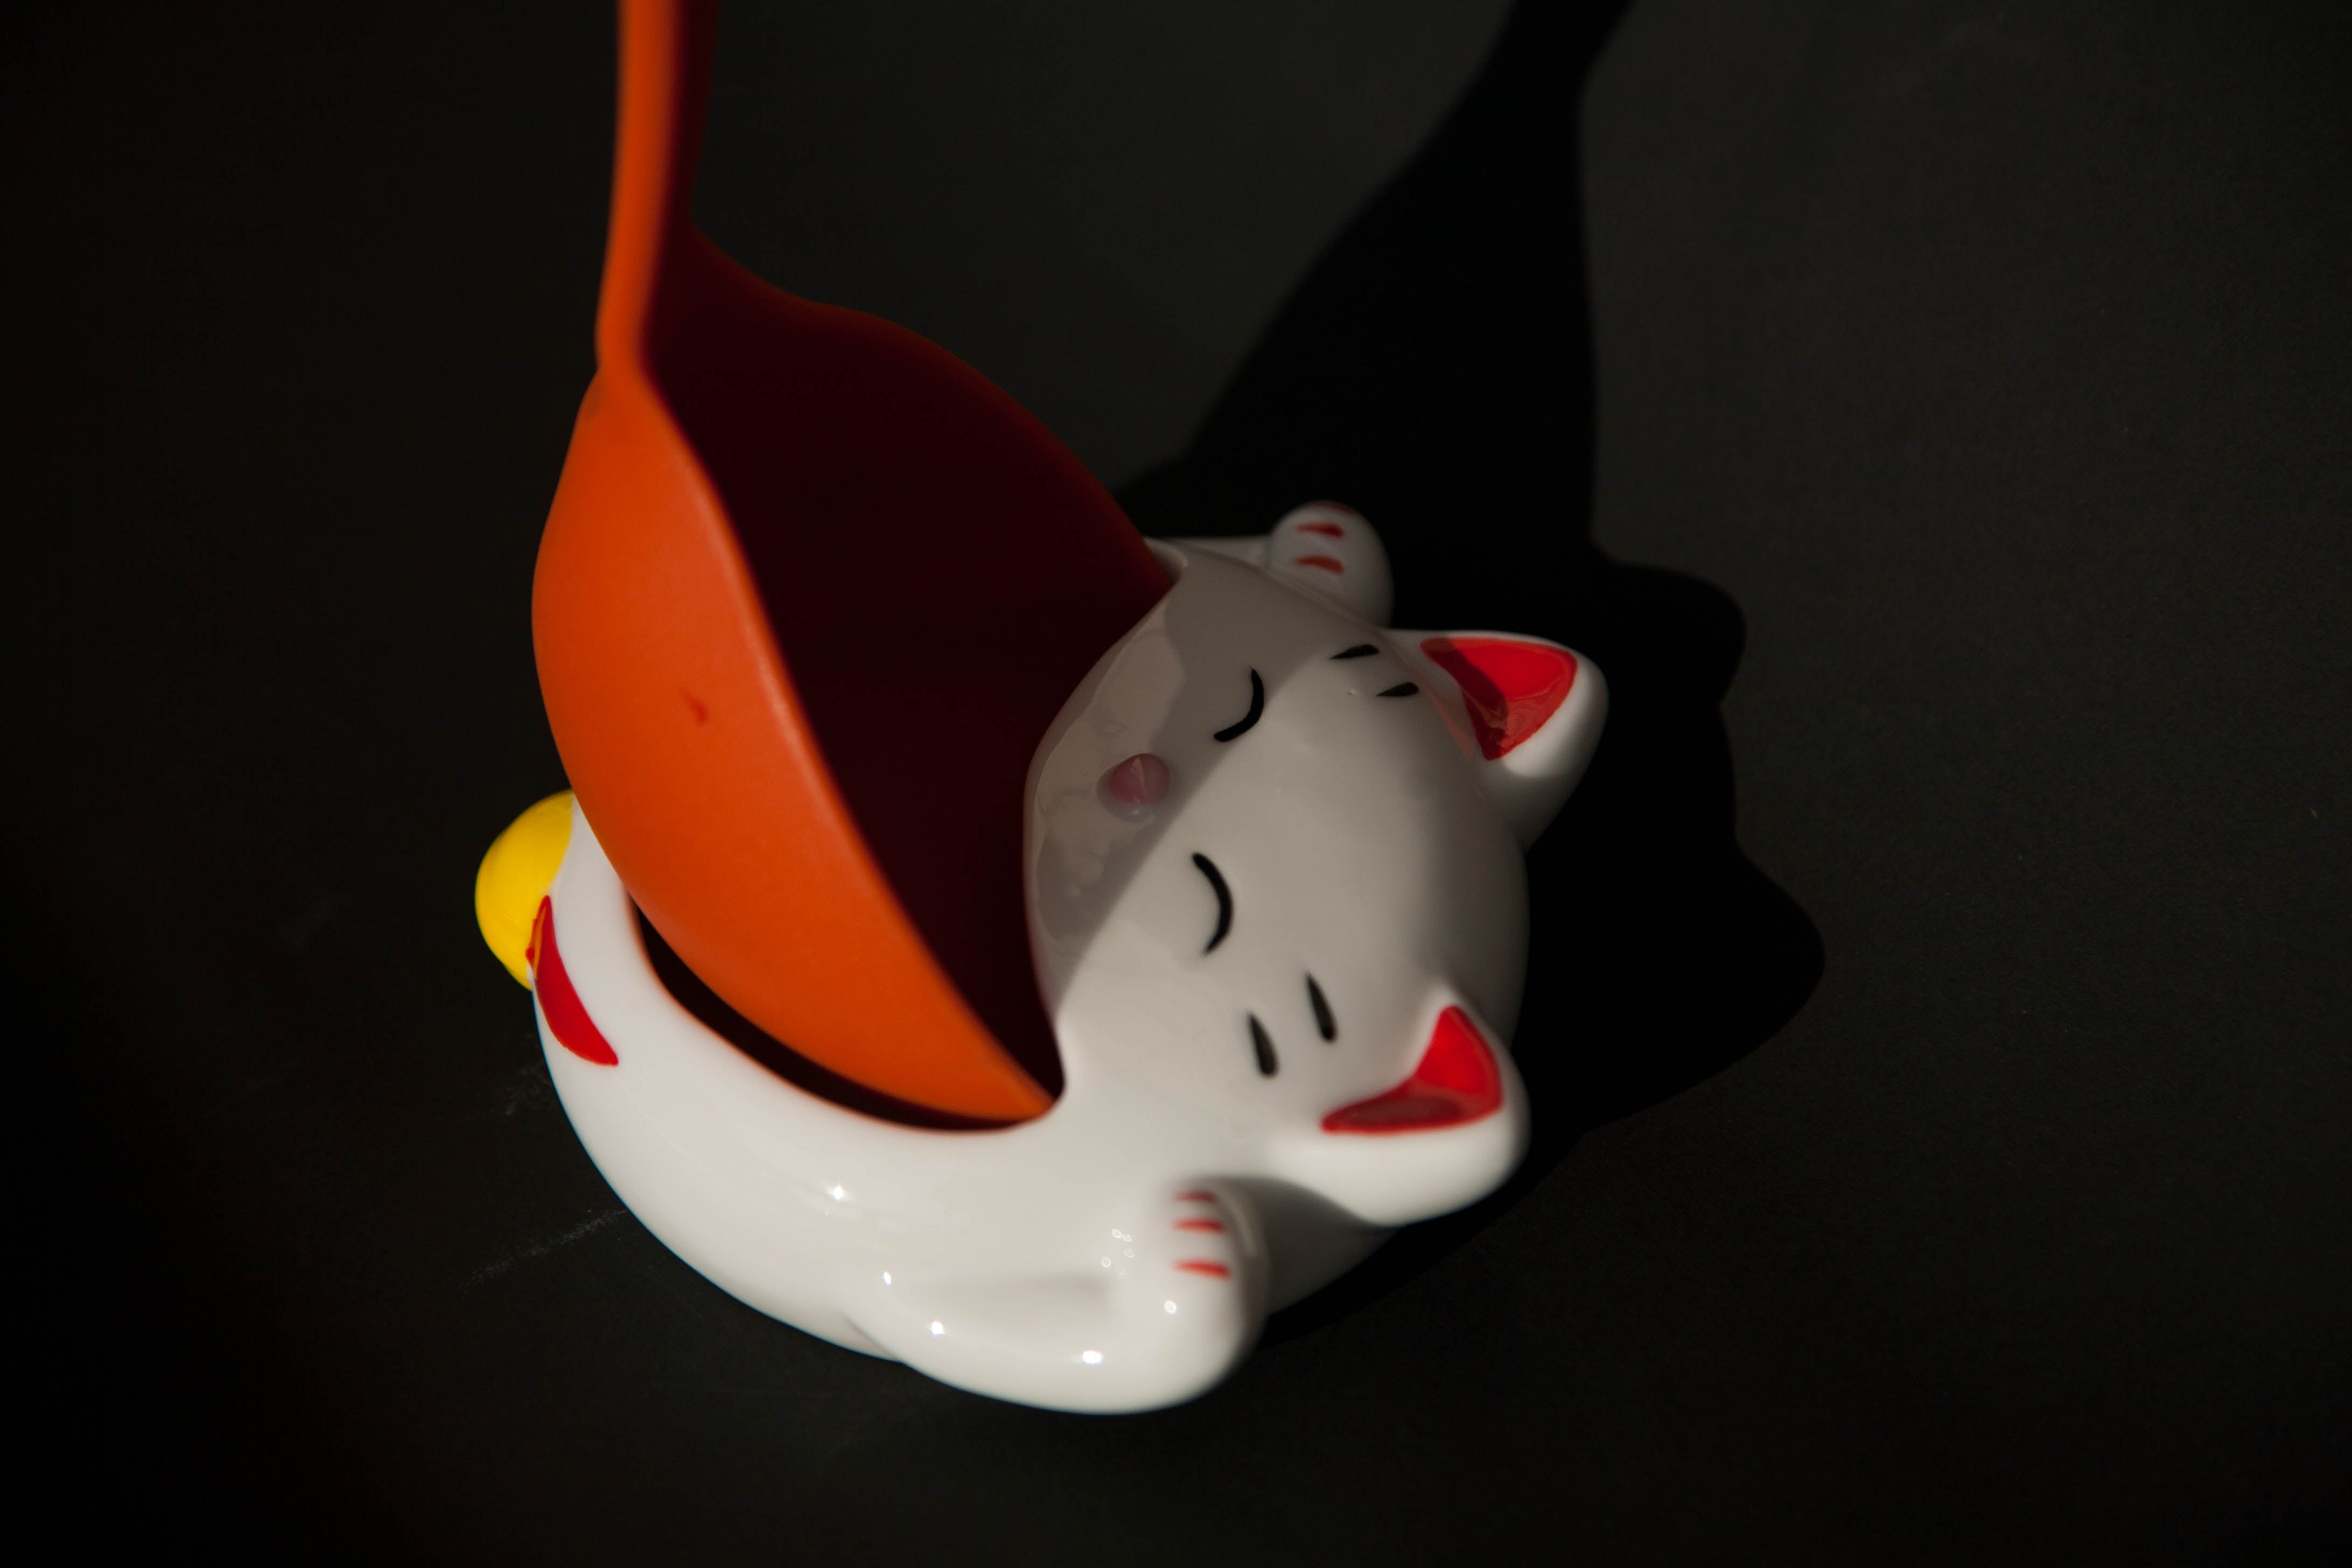 食卓小物 - 招財貓造型湯勺